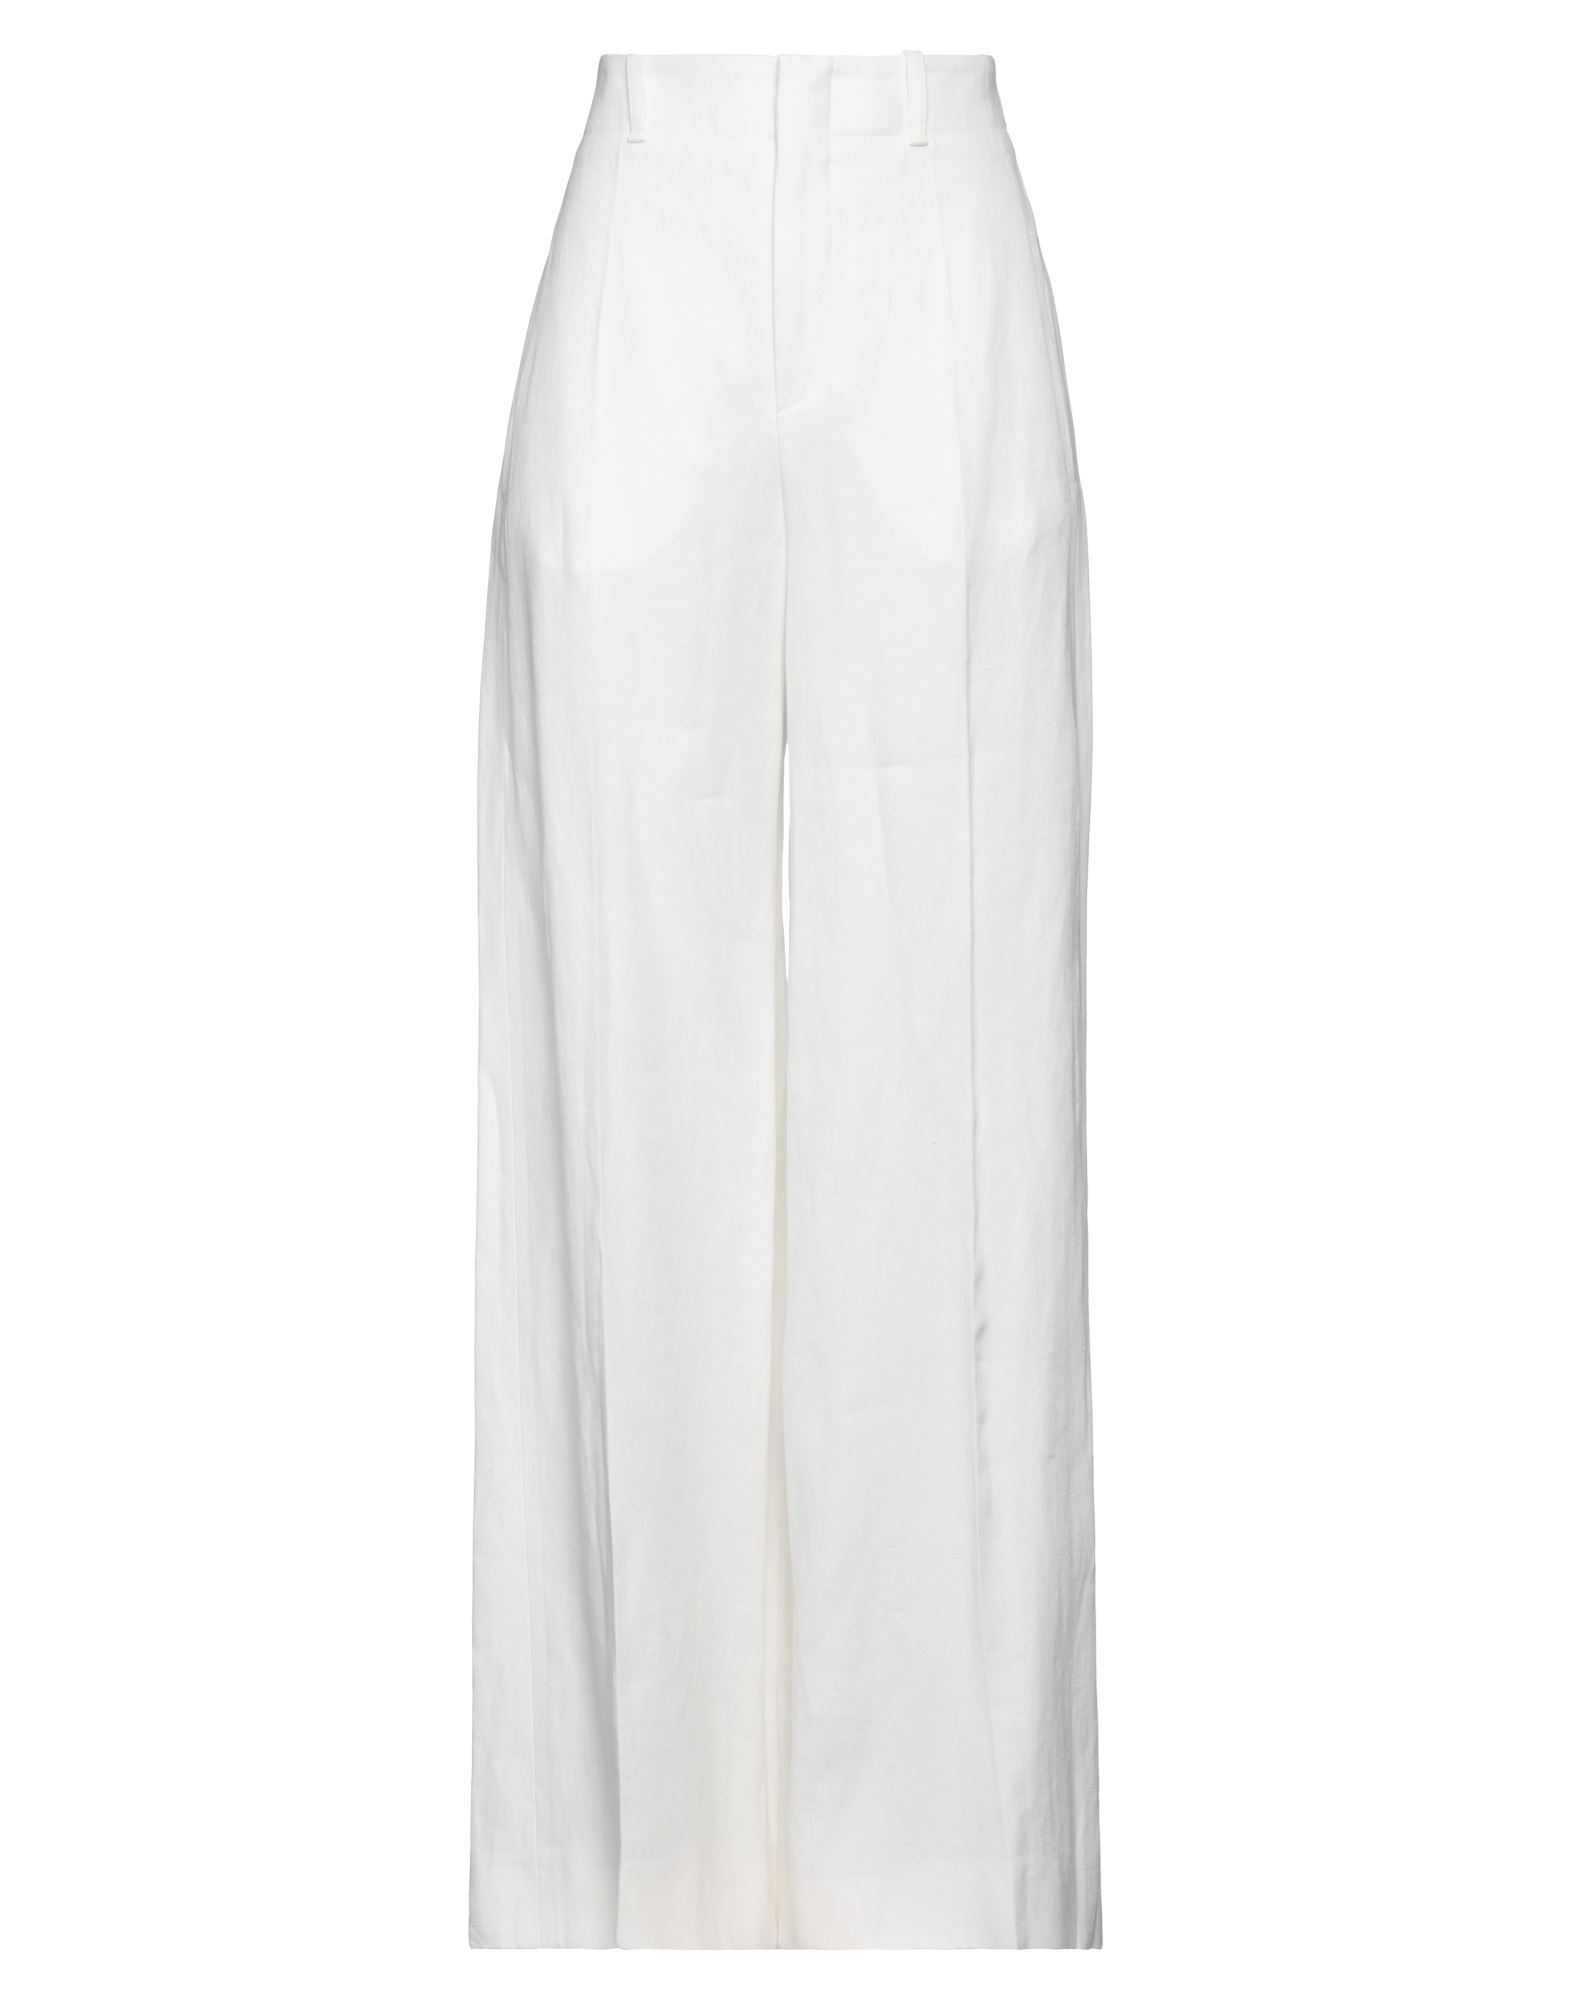 Chloé Woman Pants White Size 10 Linen